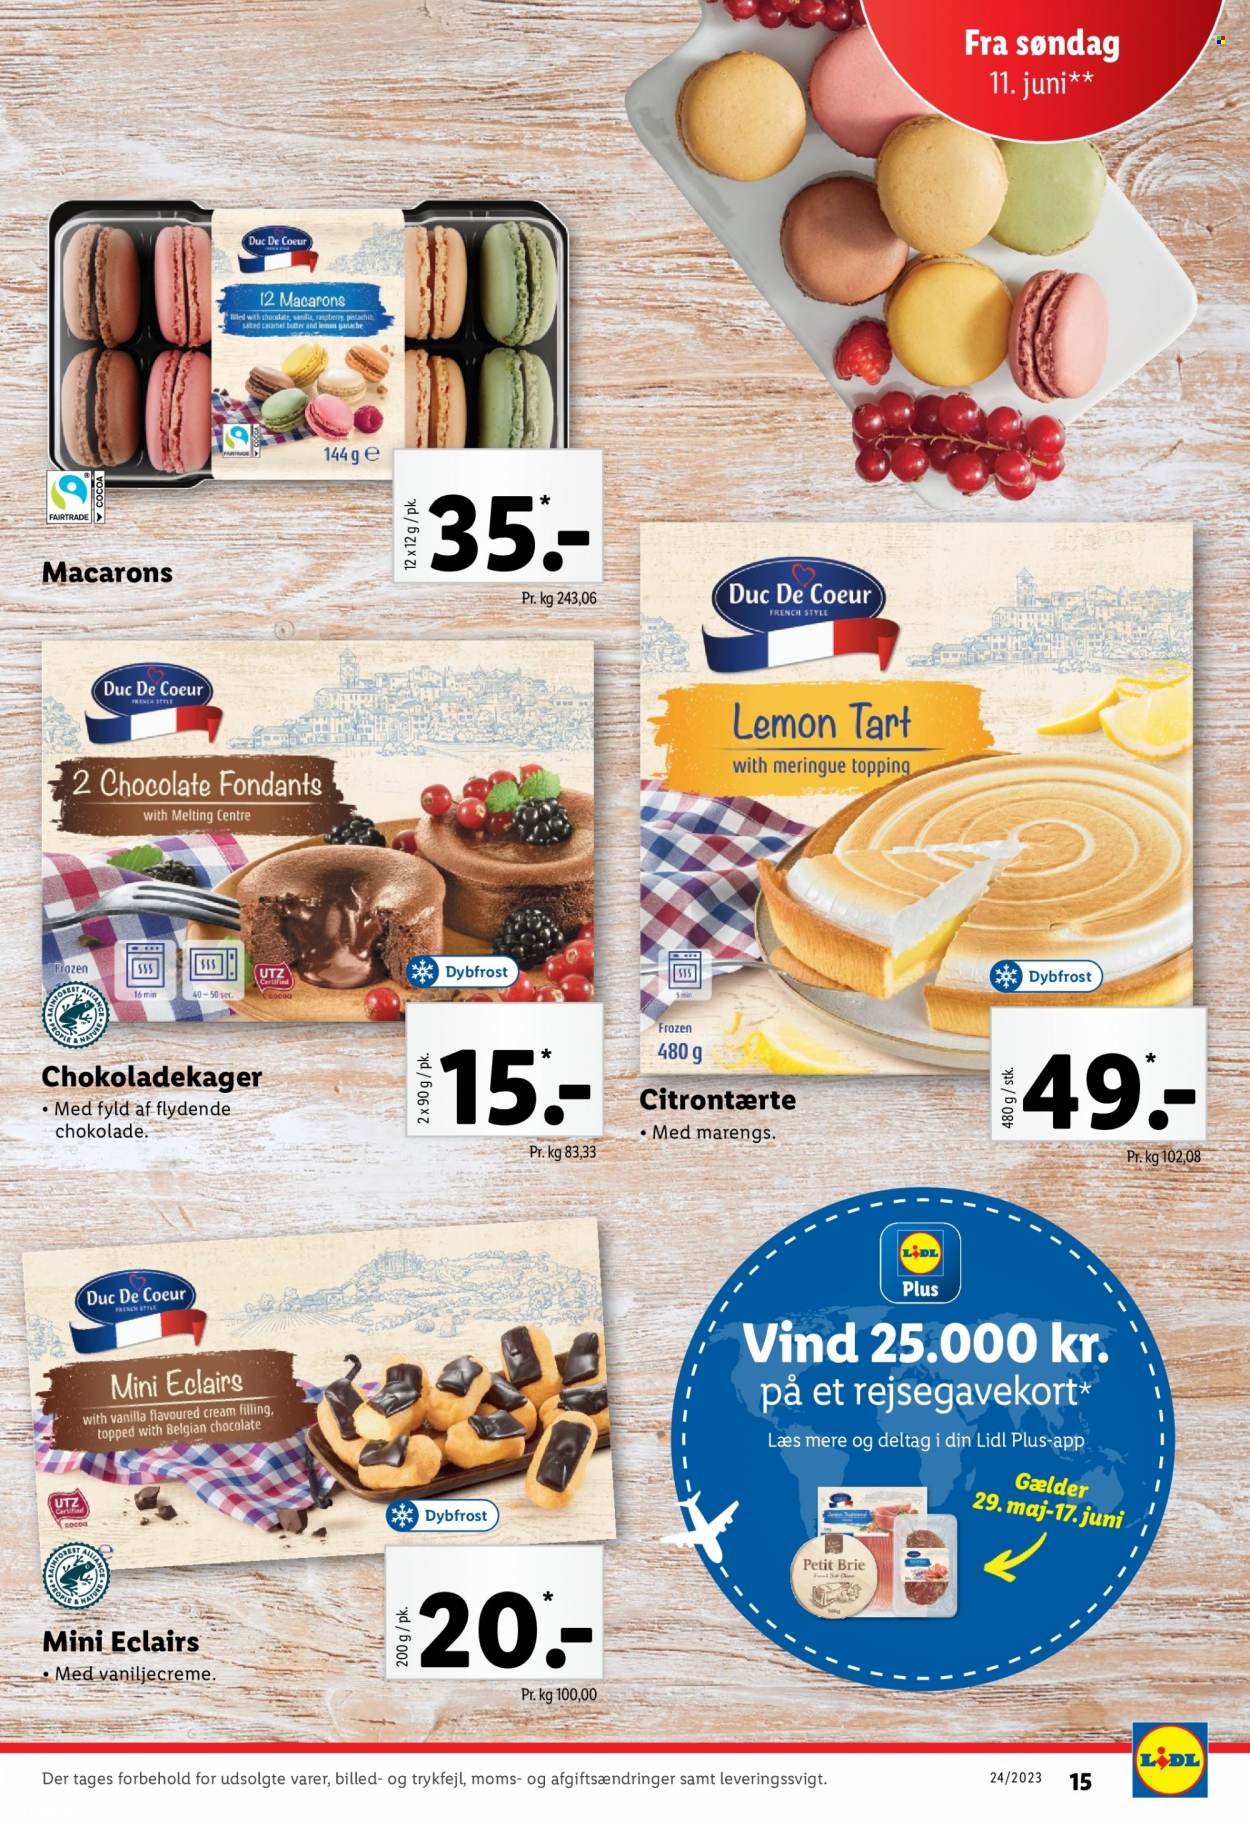 thumbnail - Lidl tilbud  - 11.6.2023 - 17.6.2023 - tilbudsprodukter - macarons, marengs, brie, chokolade, vanilje, topping. Side 15.